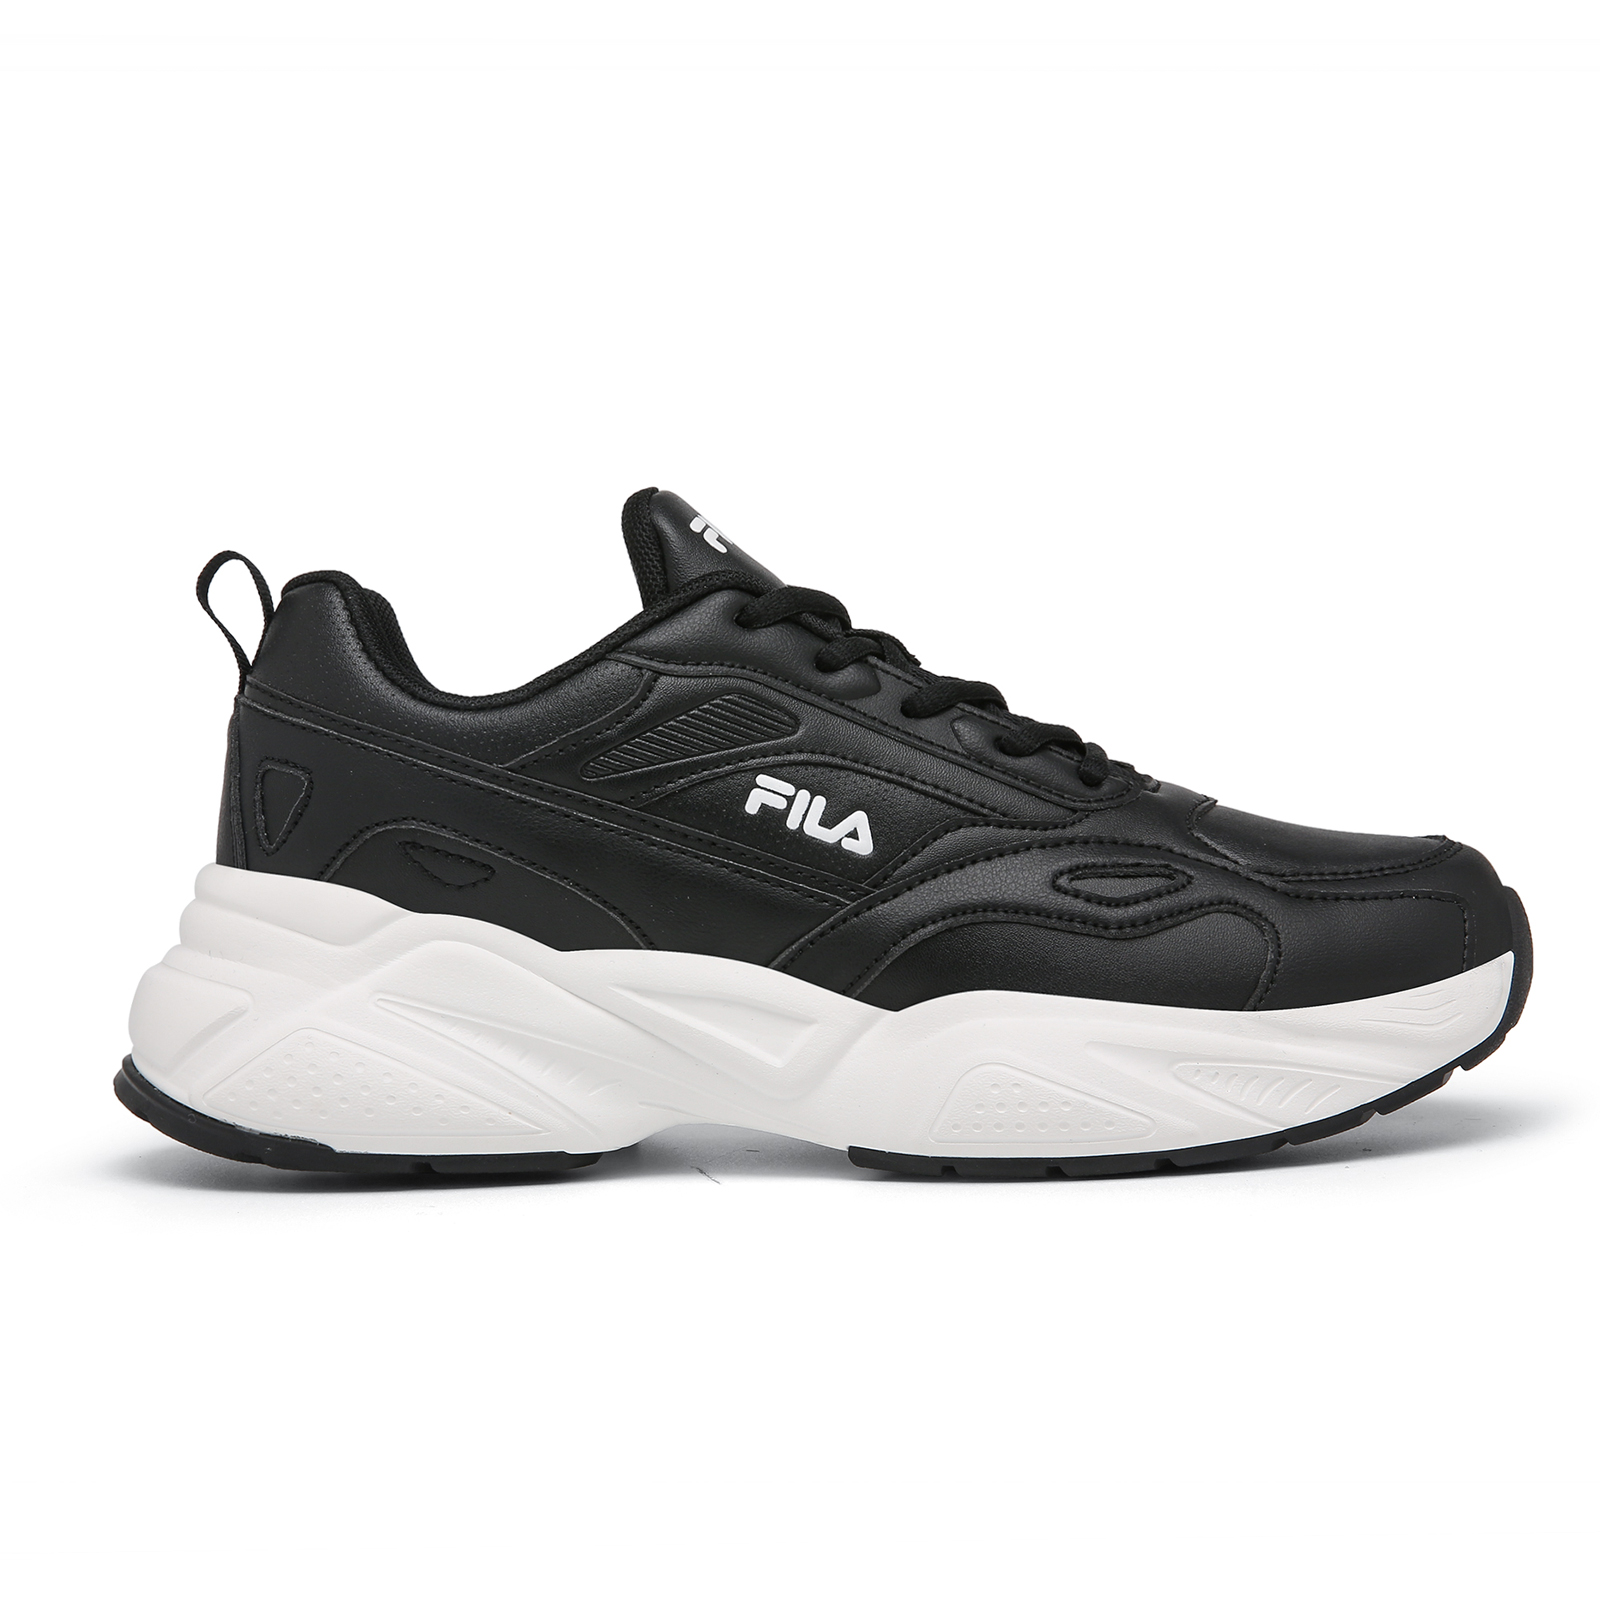 Ανδρικά > Παπούτσια > Sneaker > Παπούτσι Low Cut Fila - 1313775 MEMORY PALMA 2 FOOTWEAR - BLACK